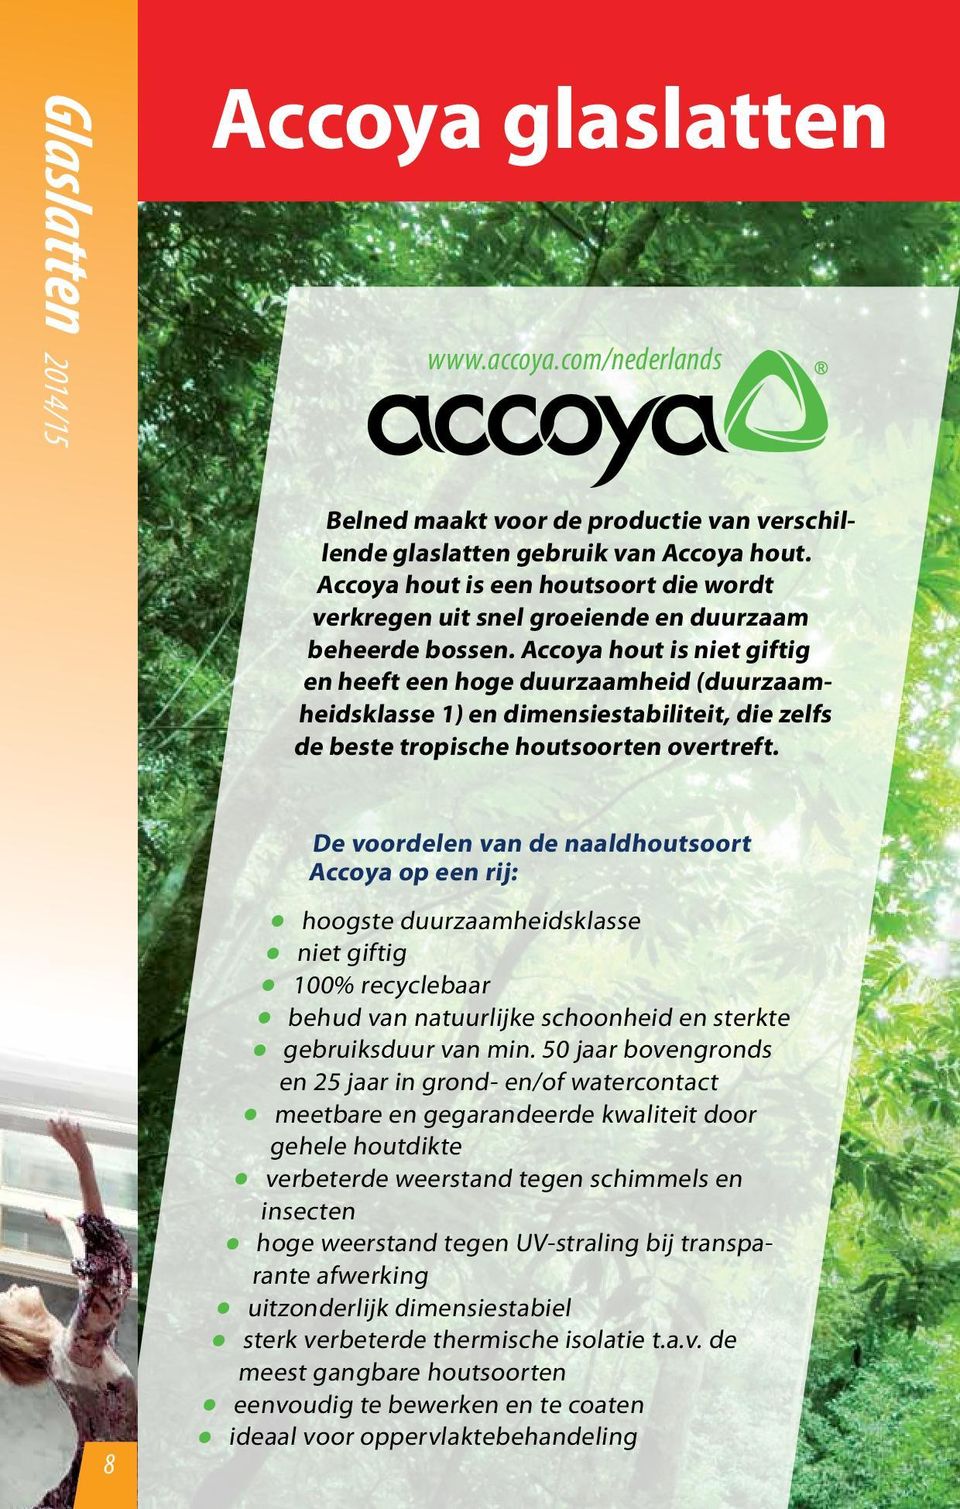 Accoya hout is niet giftig en heeft een hoge duurzaamheid (duurzaamheidsklasse 1) en dimensiestabiliteit, die zelfs de beste tropische houtsoorten overtreft.